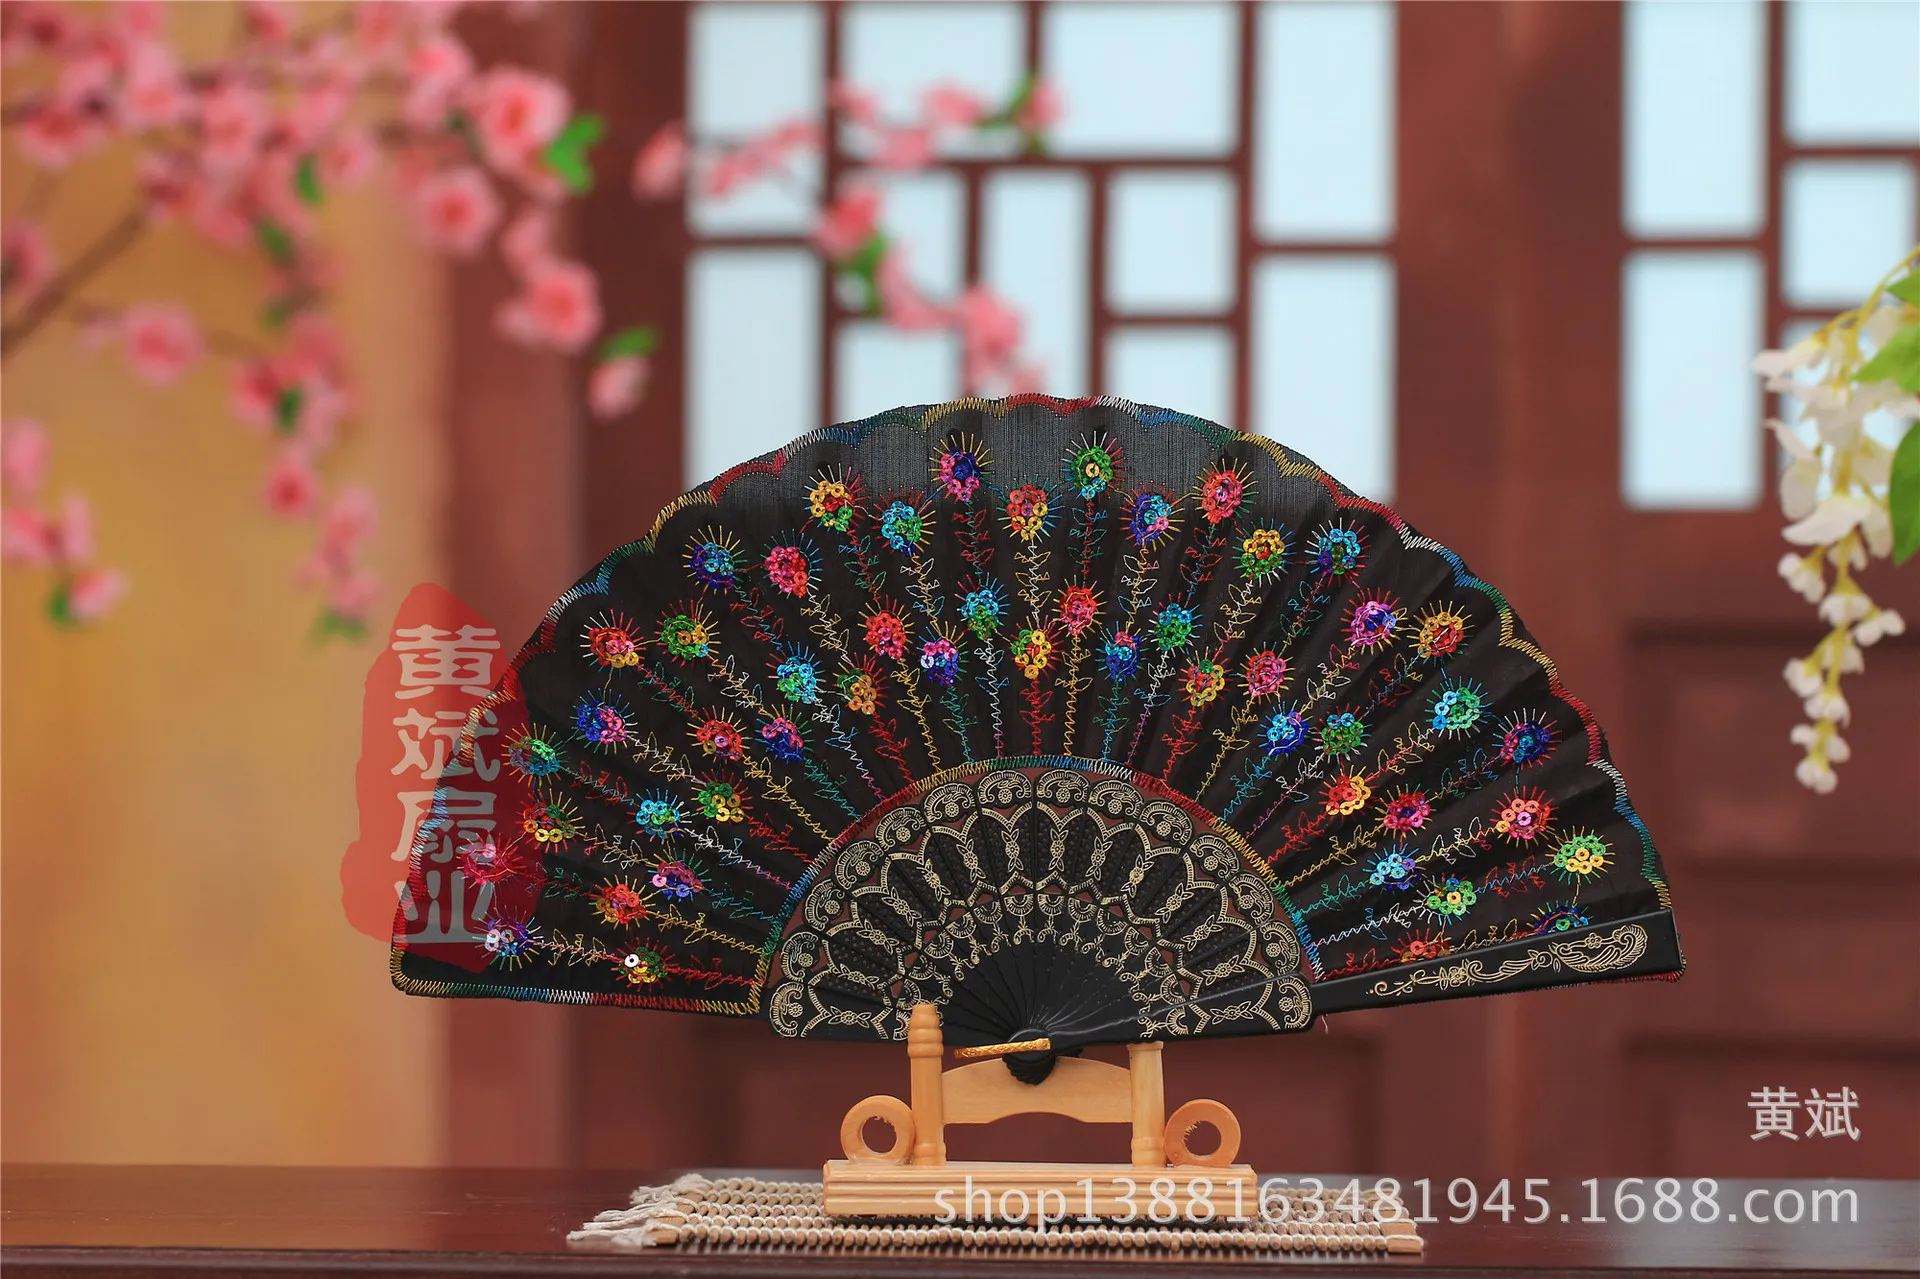 El yapımı tavus kuşu nakış kumaş katlanır fan ipek üst sınıf gelin hayranları nedime fanları içi boş bambu tutamak düğün aksesuarları7322133